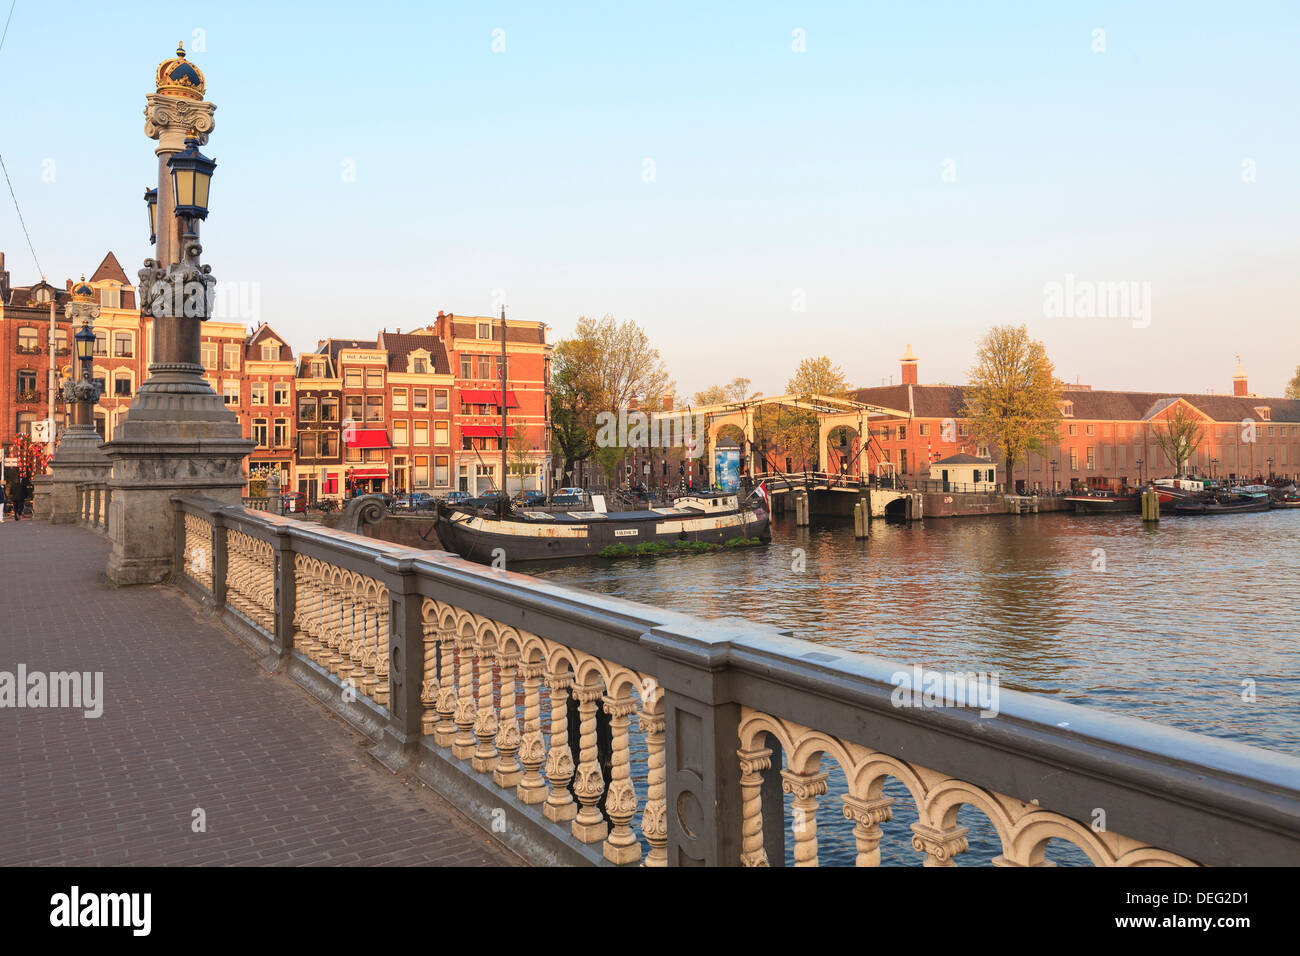 Blauwbrug), pont au-dessus de la rivière Amstel, Amsterdam, Pays-Bas, Europe Banque D'Images